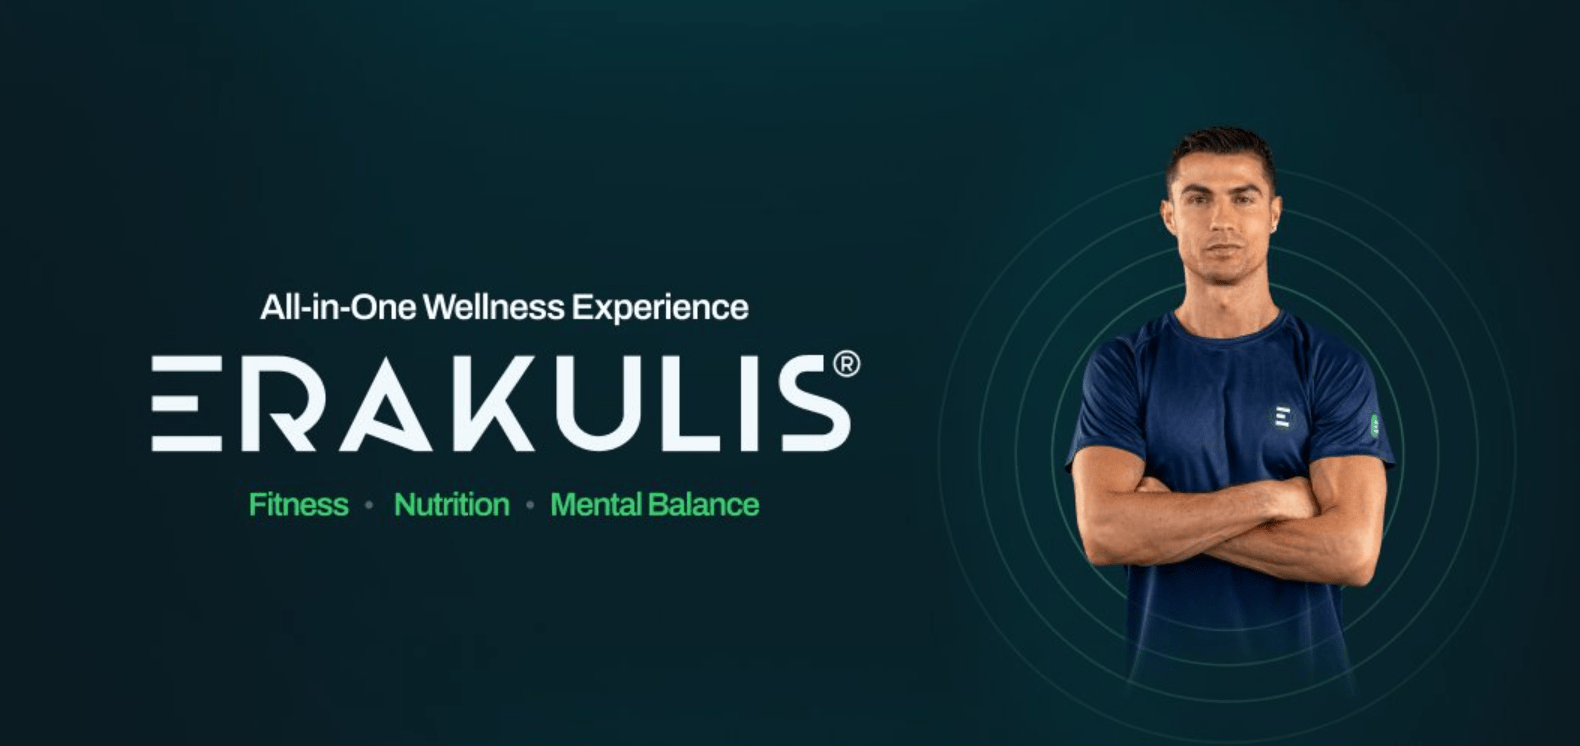 Mężczyzna w niebieskiej koszulce sportowej z założonymi rękami, stoi obok logotypu "ERAKULIS" z hasłem "All-in-One Wellness Experience" i słowami "Fitness · Nutrition · Mental Balance" na ciemnozielonym tle.